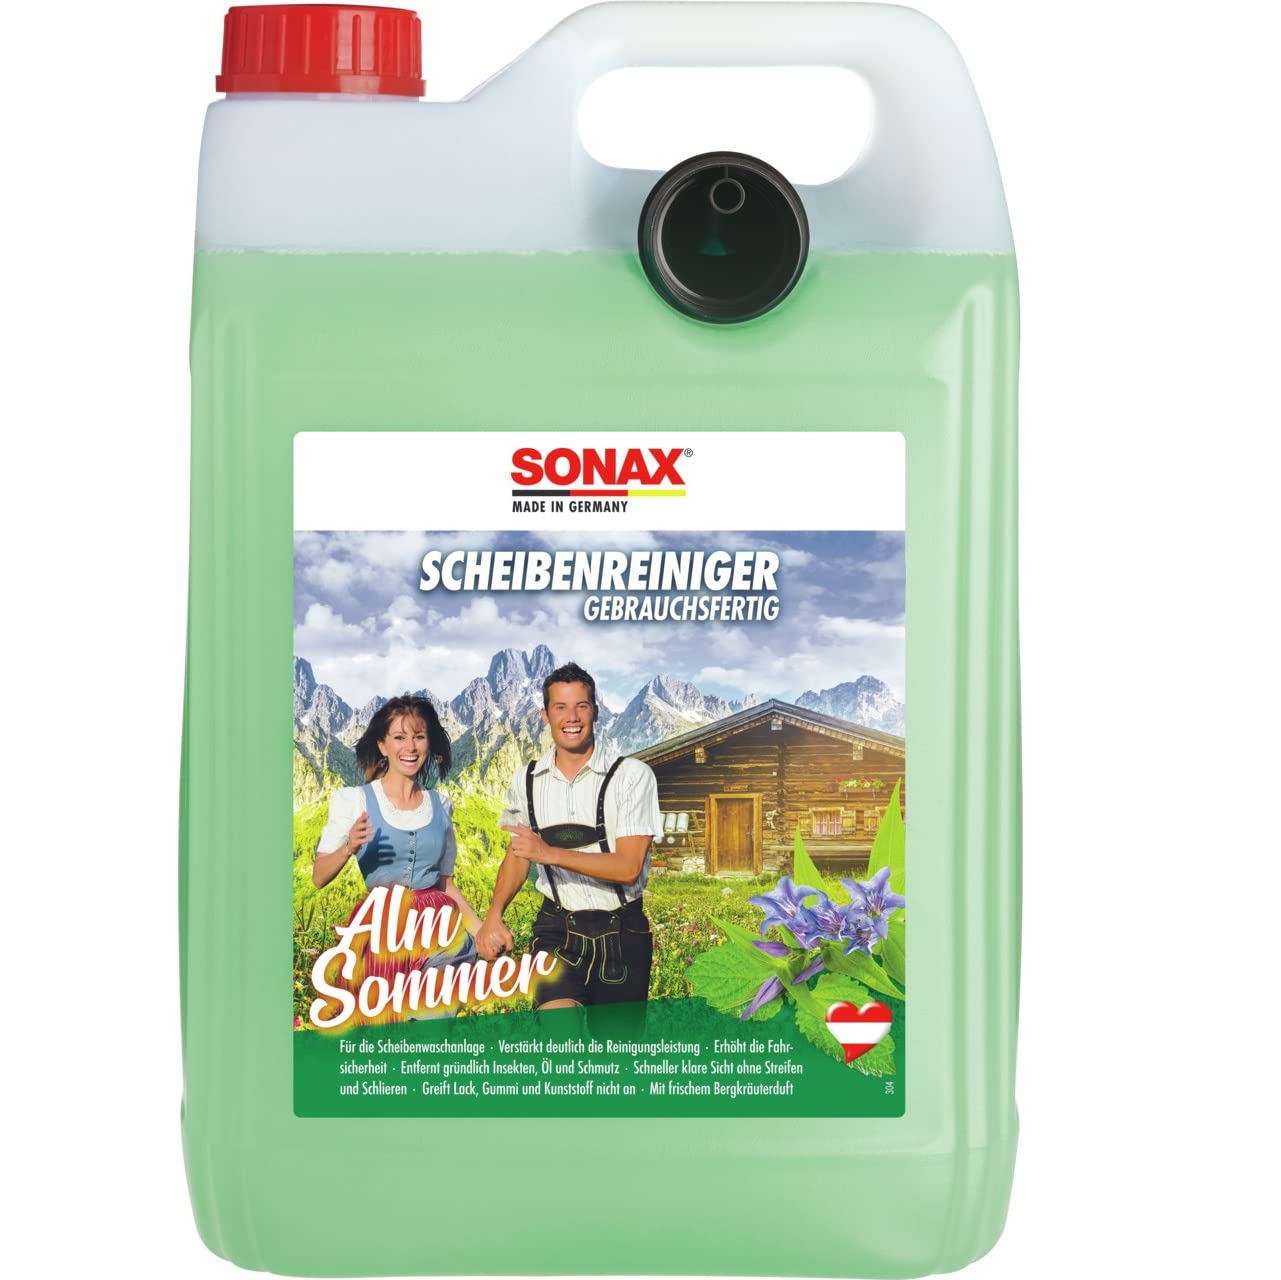 SONAX ScheibenReiniger gebrauchsfertig AlmSommer (5 Liter) trendiger Reiniger mit einzigartigem Bergkräuterduft, für die Scheibenwaschanlage im Sommer | Art-Nr. 03225000 von SONAX